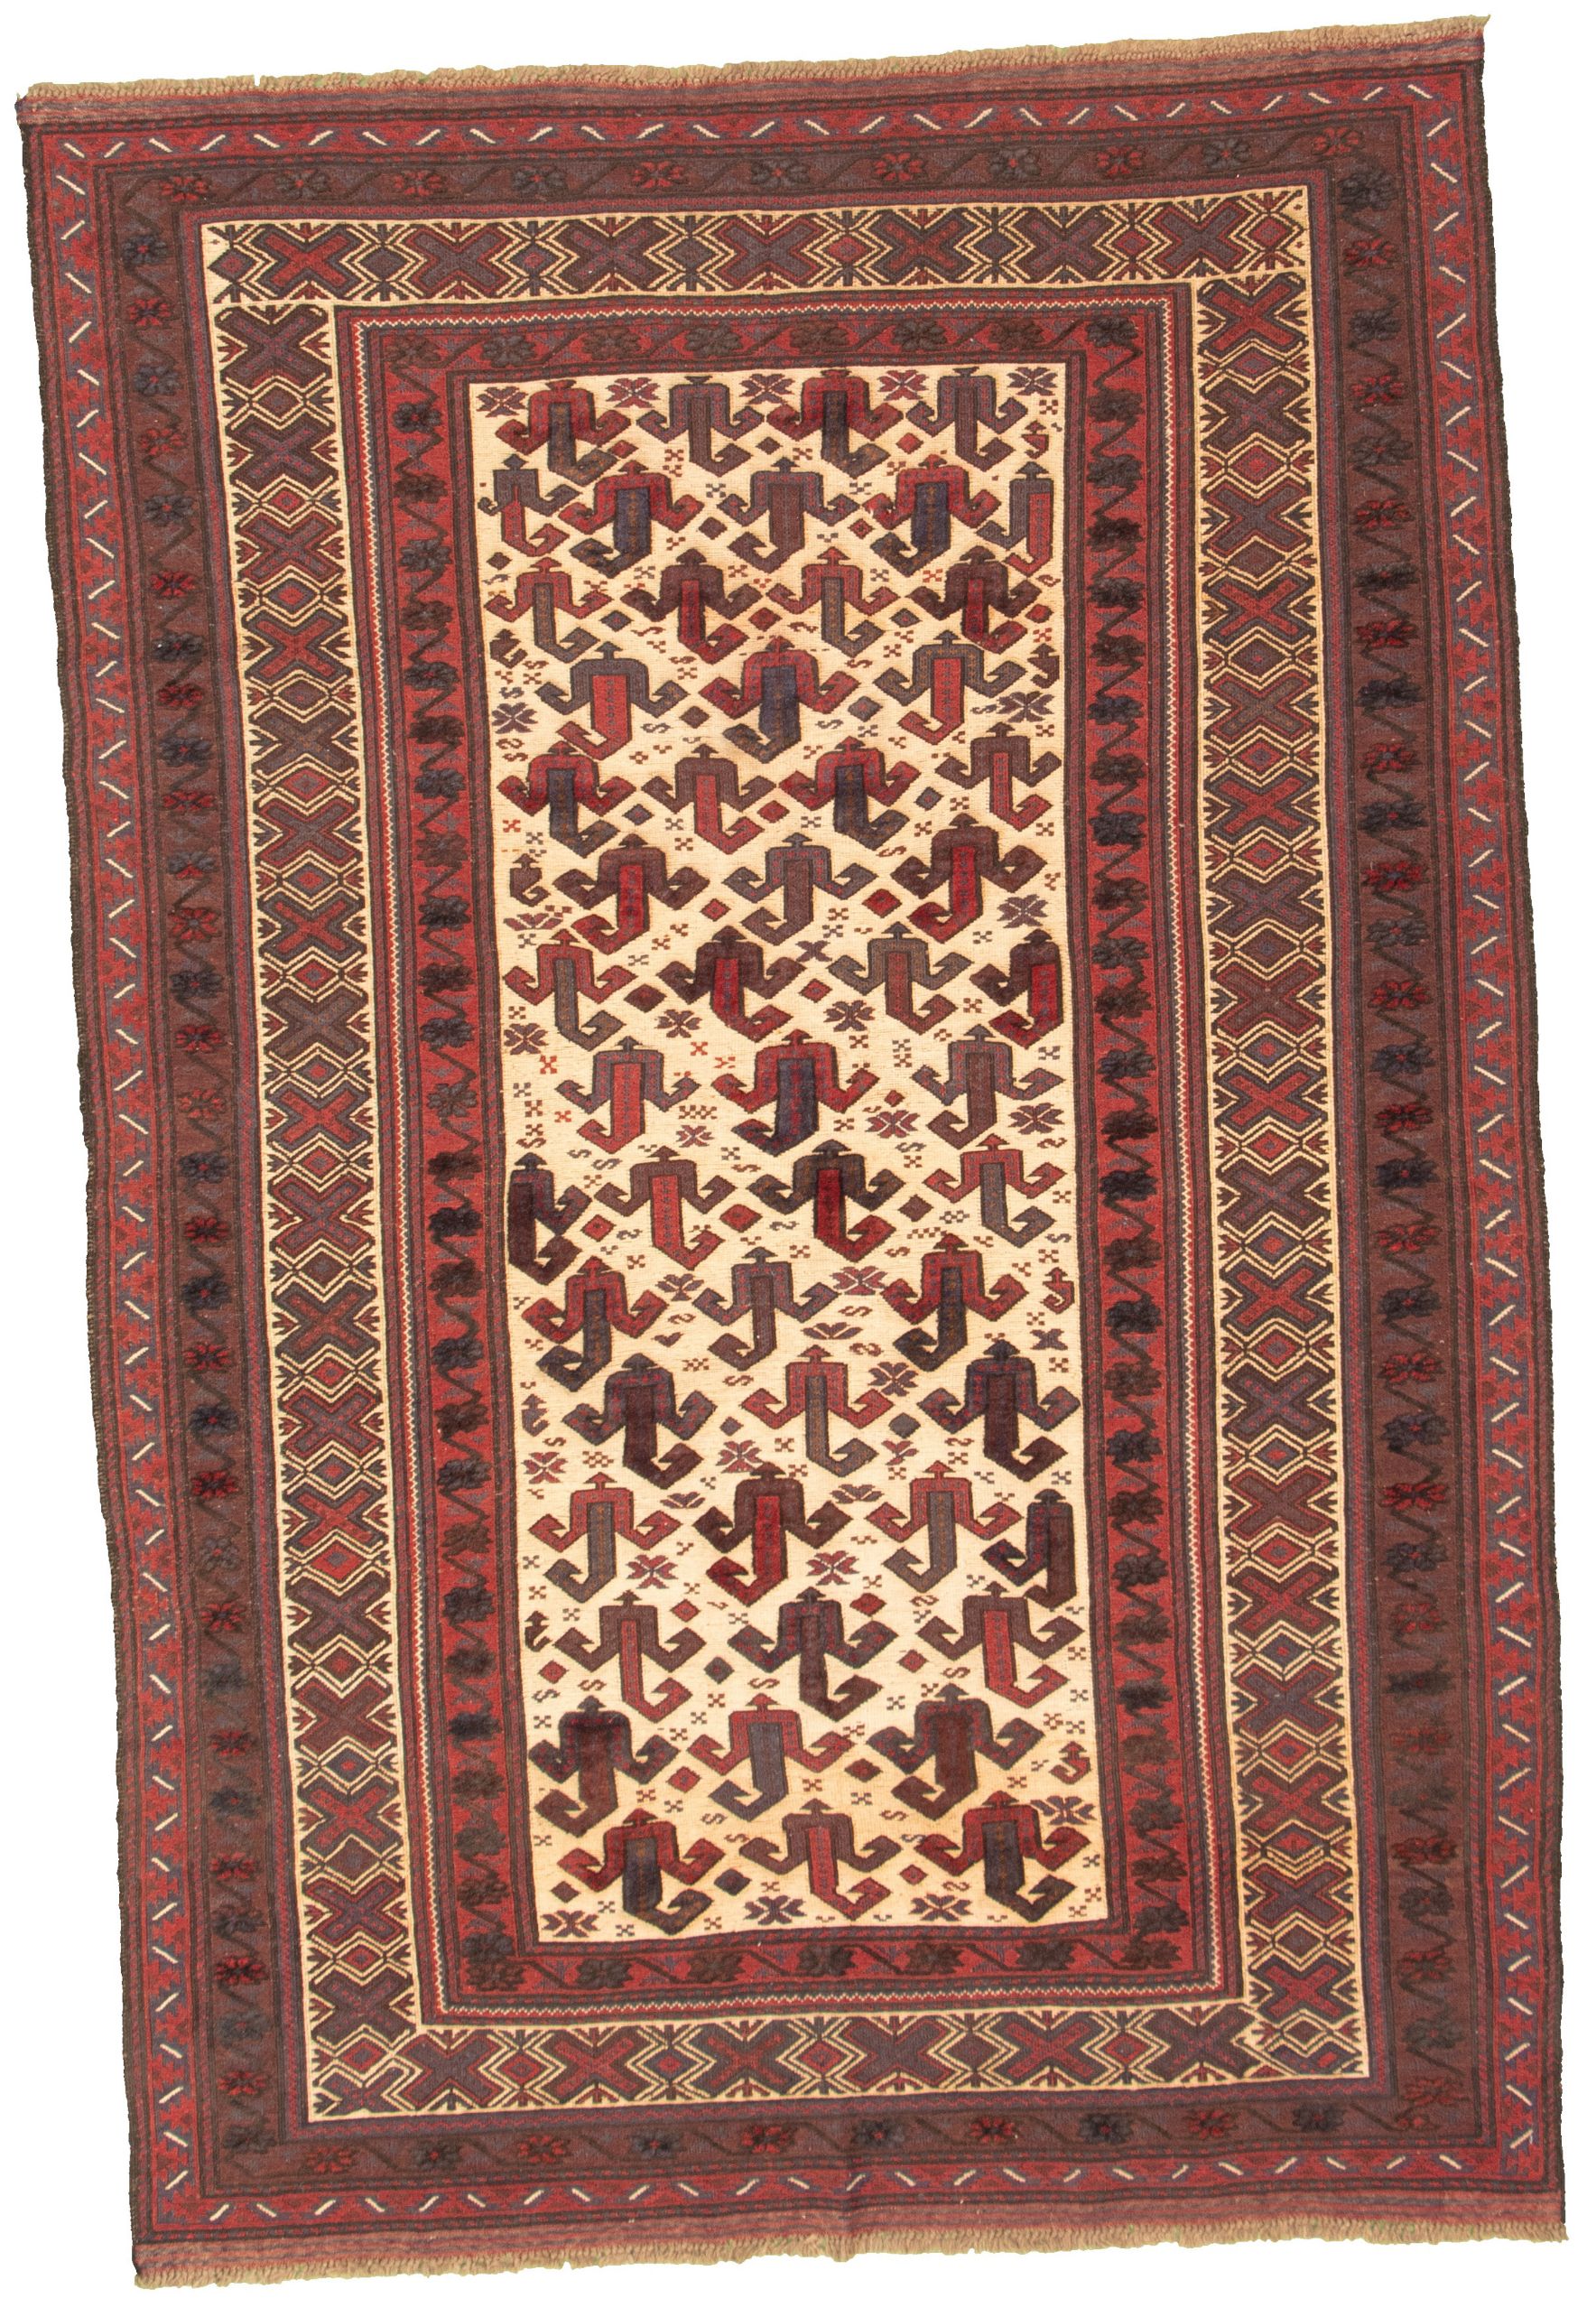 Hand-knotted Tajik Caucasian Dark Red Wool Rug 6'3" x 9'2" Size: 6'3" x 9'2"  